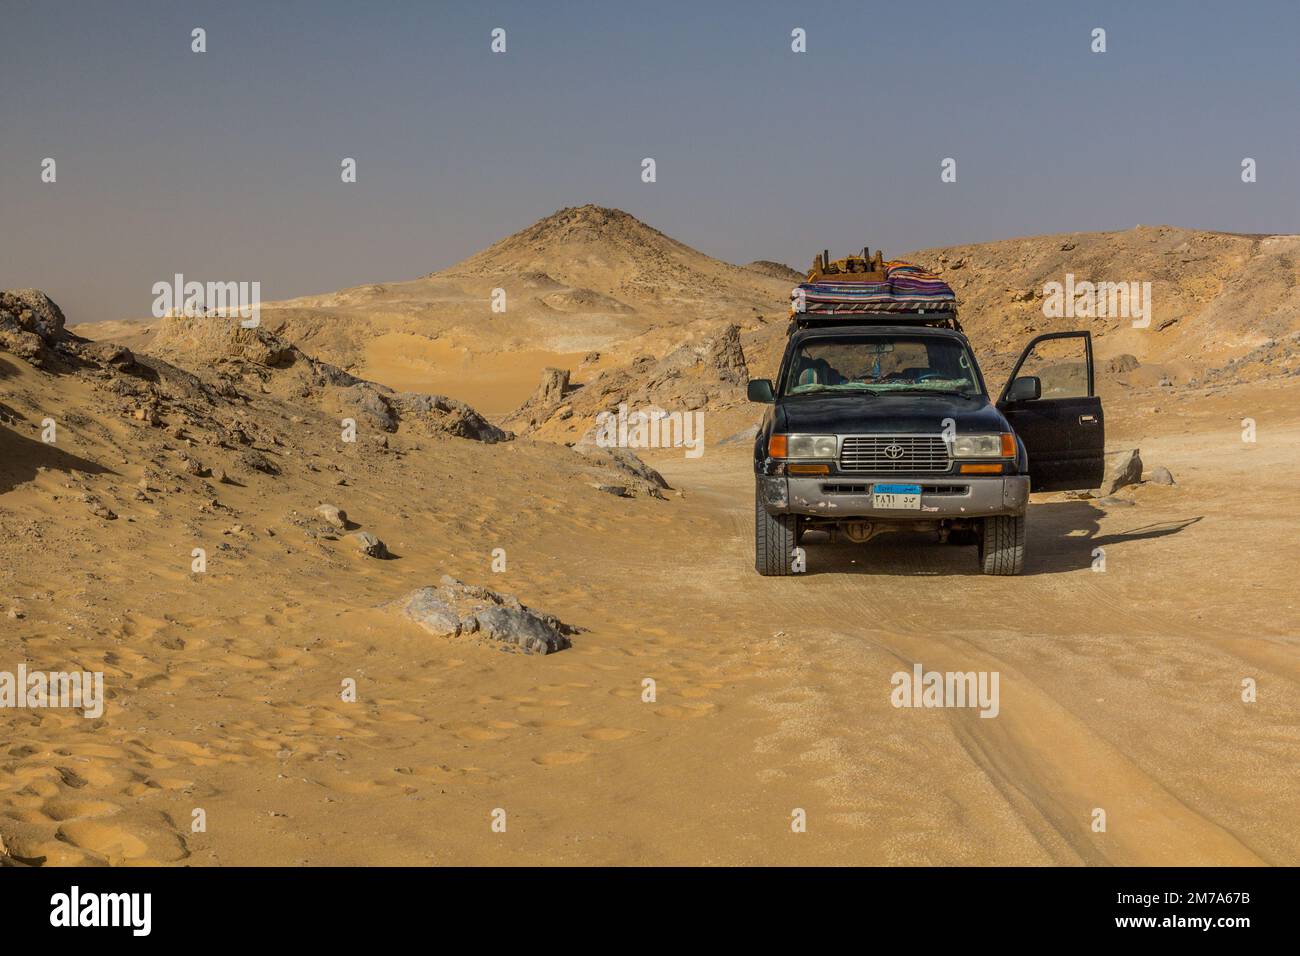 DÉSERT OCCIDENTAL, ÉGYPTE - 6 FÉVRIER 2019 : véhicule 4WD à la montagne Crystal dans le désert occidental, Égypte Banque D'Images